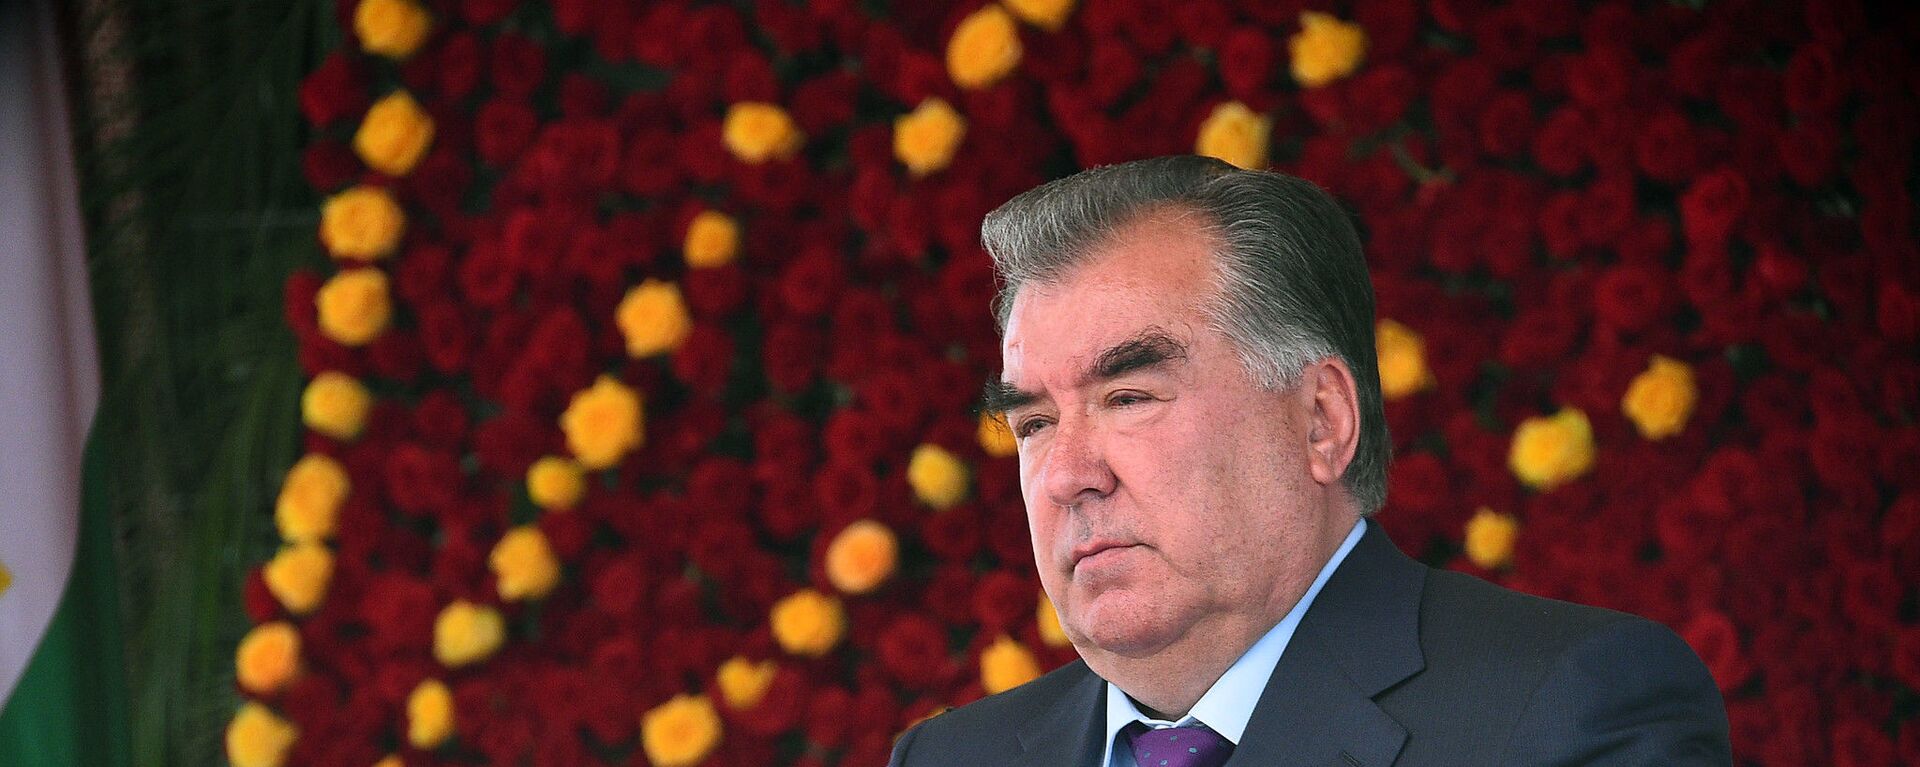 Президент Республики Таджикистана Эмомали Рахмон - Sputnik Таджикистан, 1920, 02.12.2020